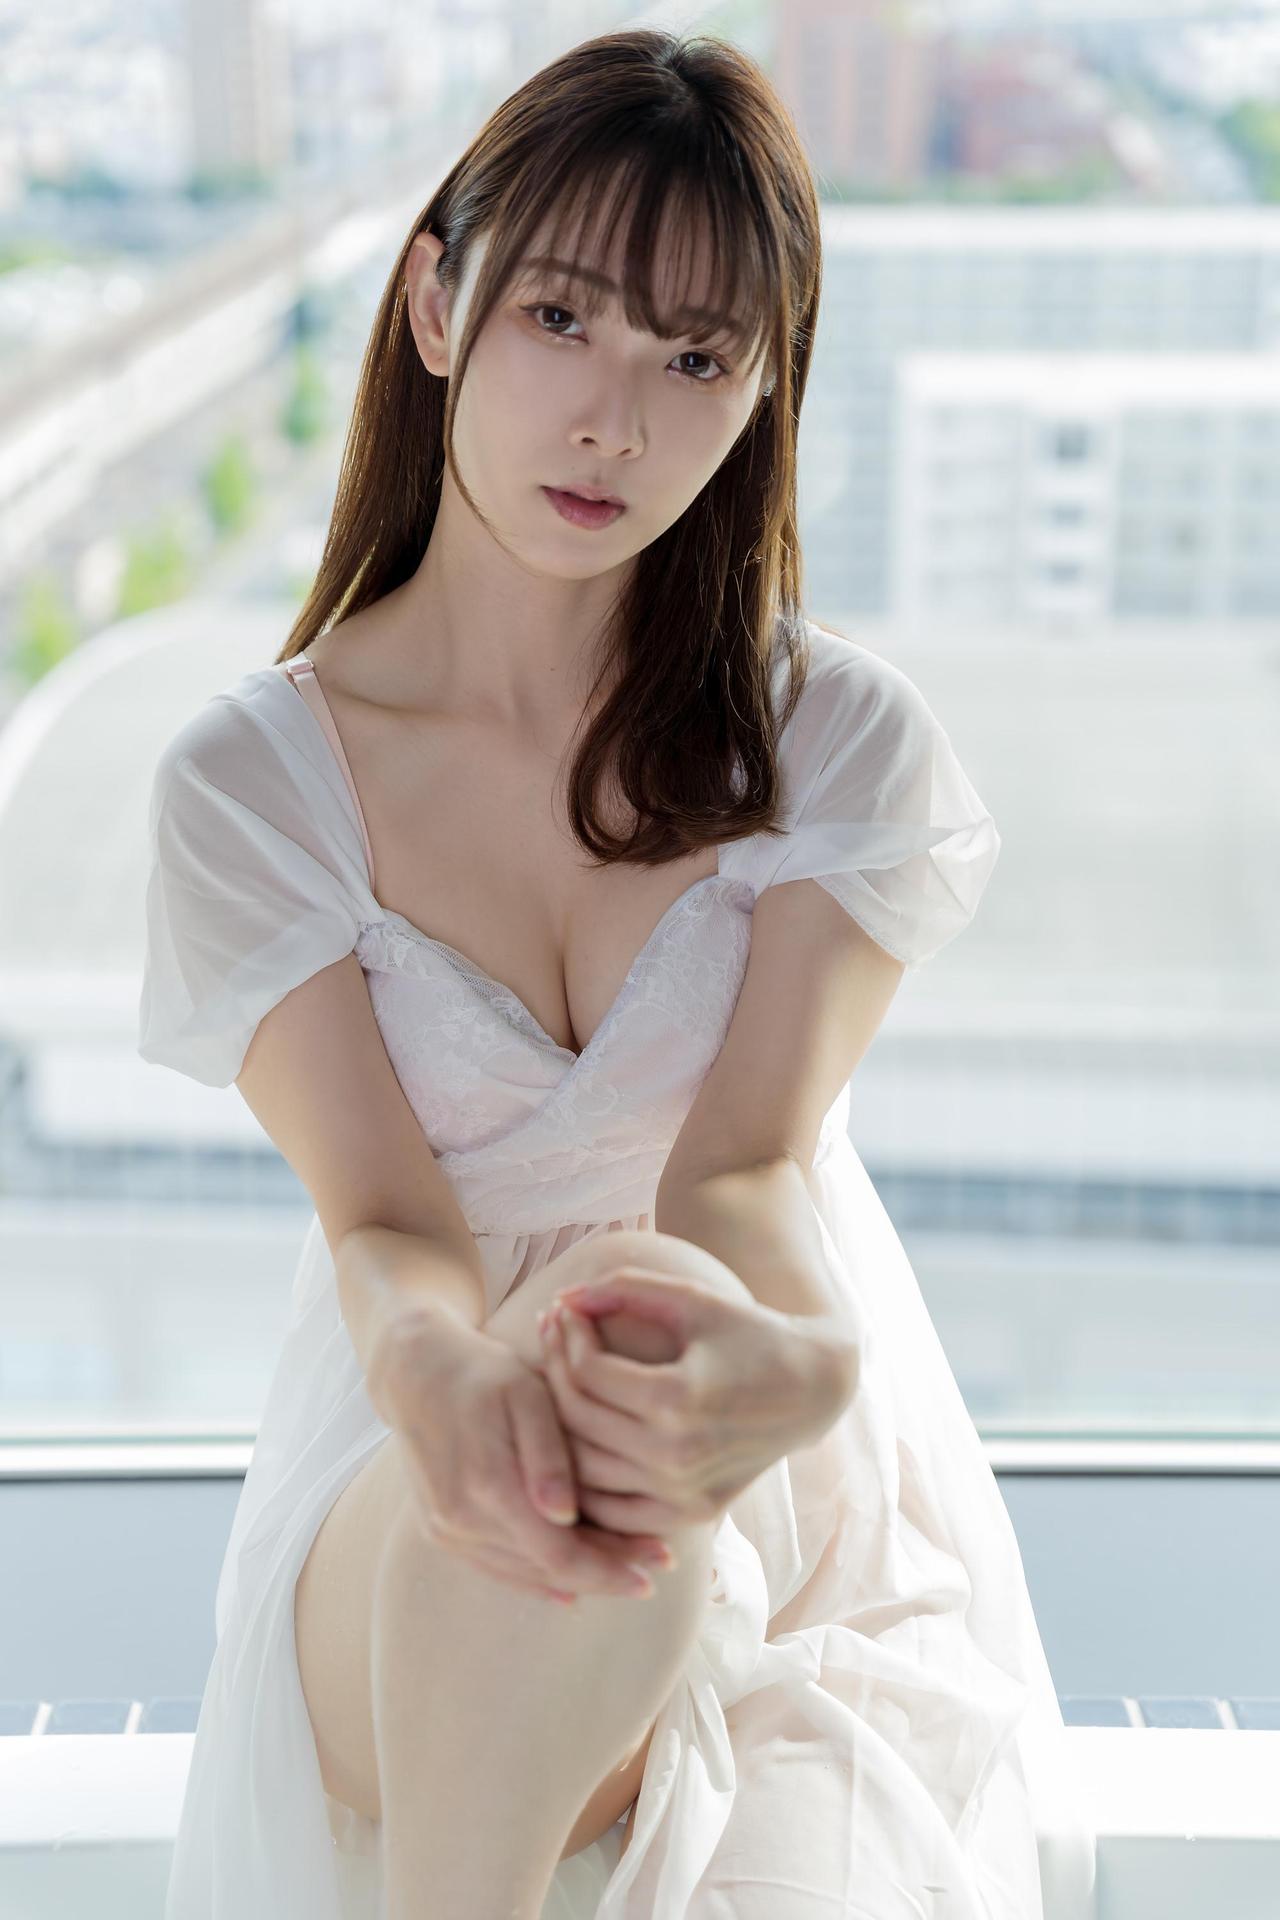 Mitsuki Goronzoku ゴロン族美月 フェチグラビア写真集 「translucent」 Set 01 Share Erotic Asian Girl Picture